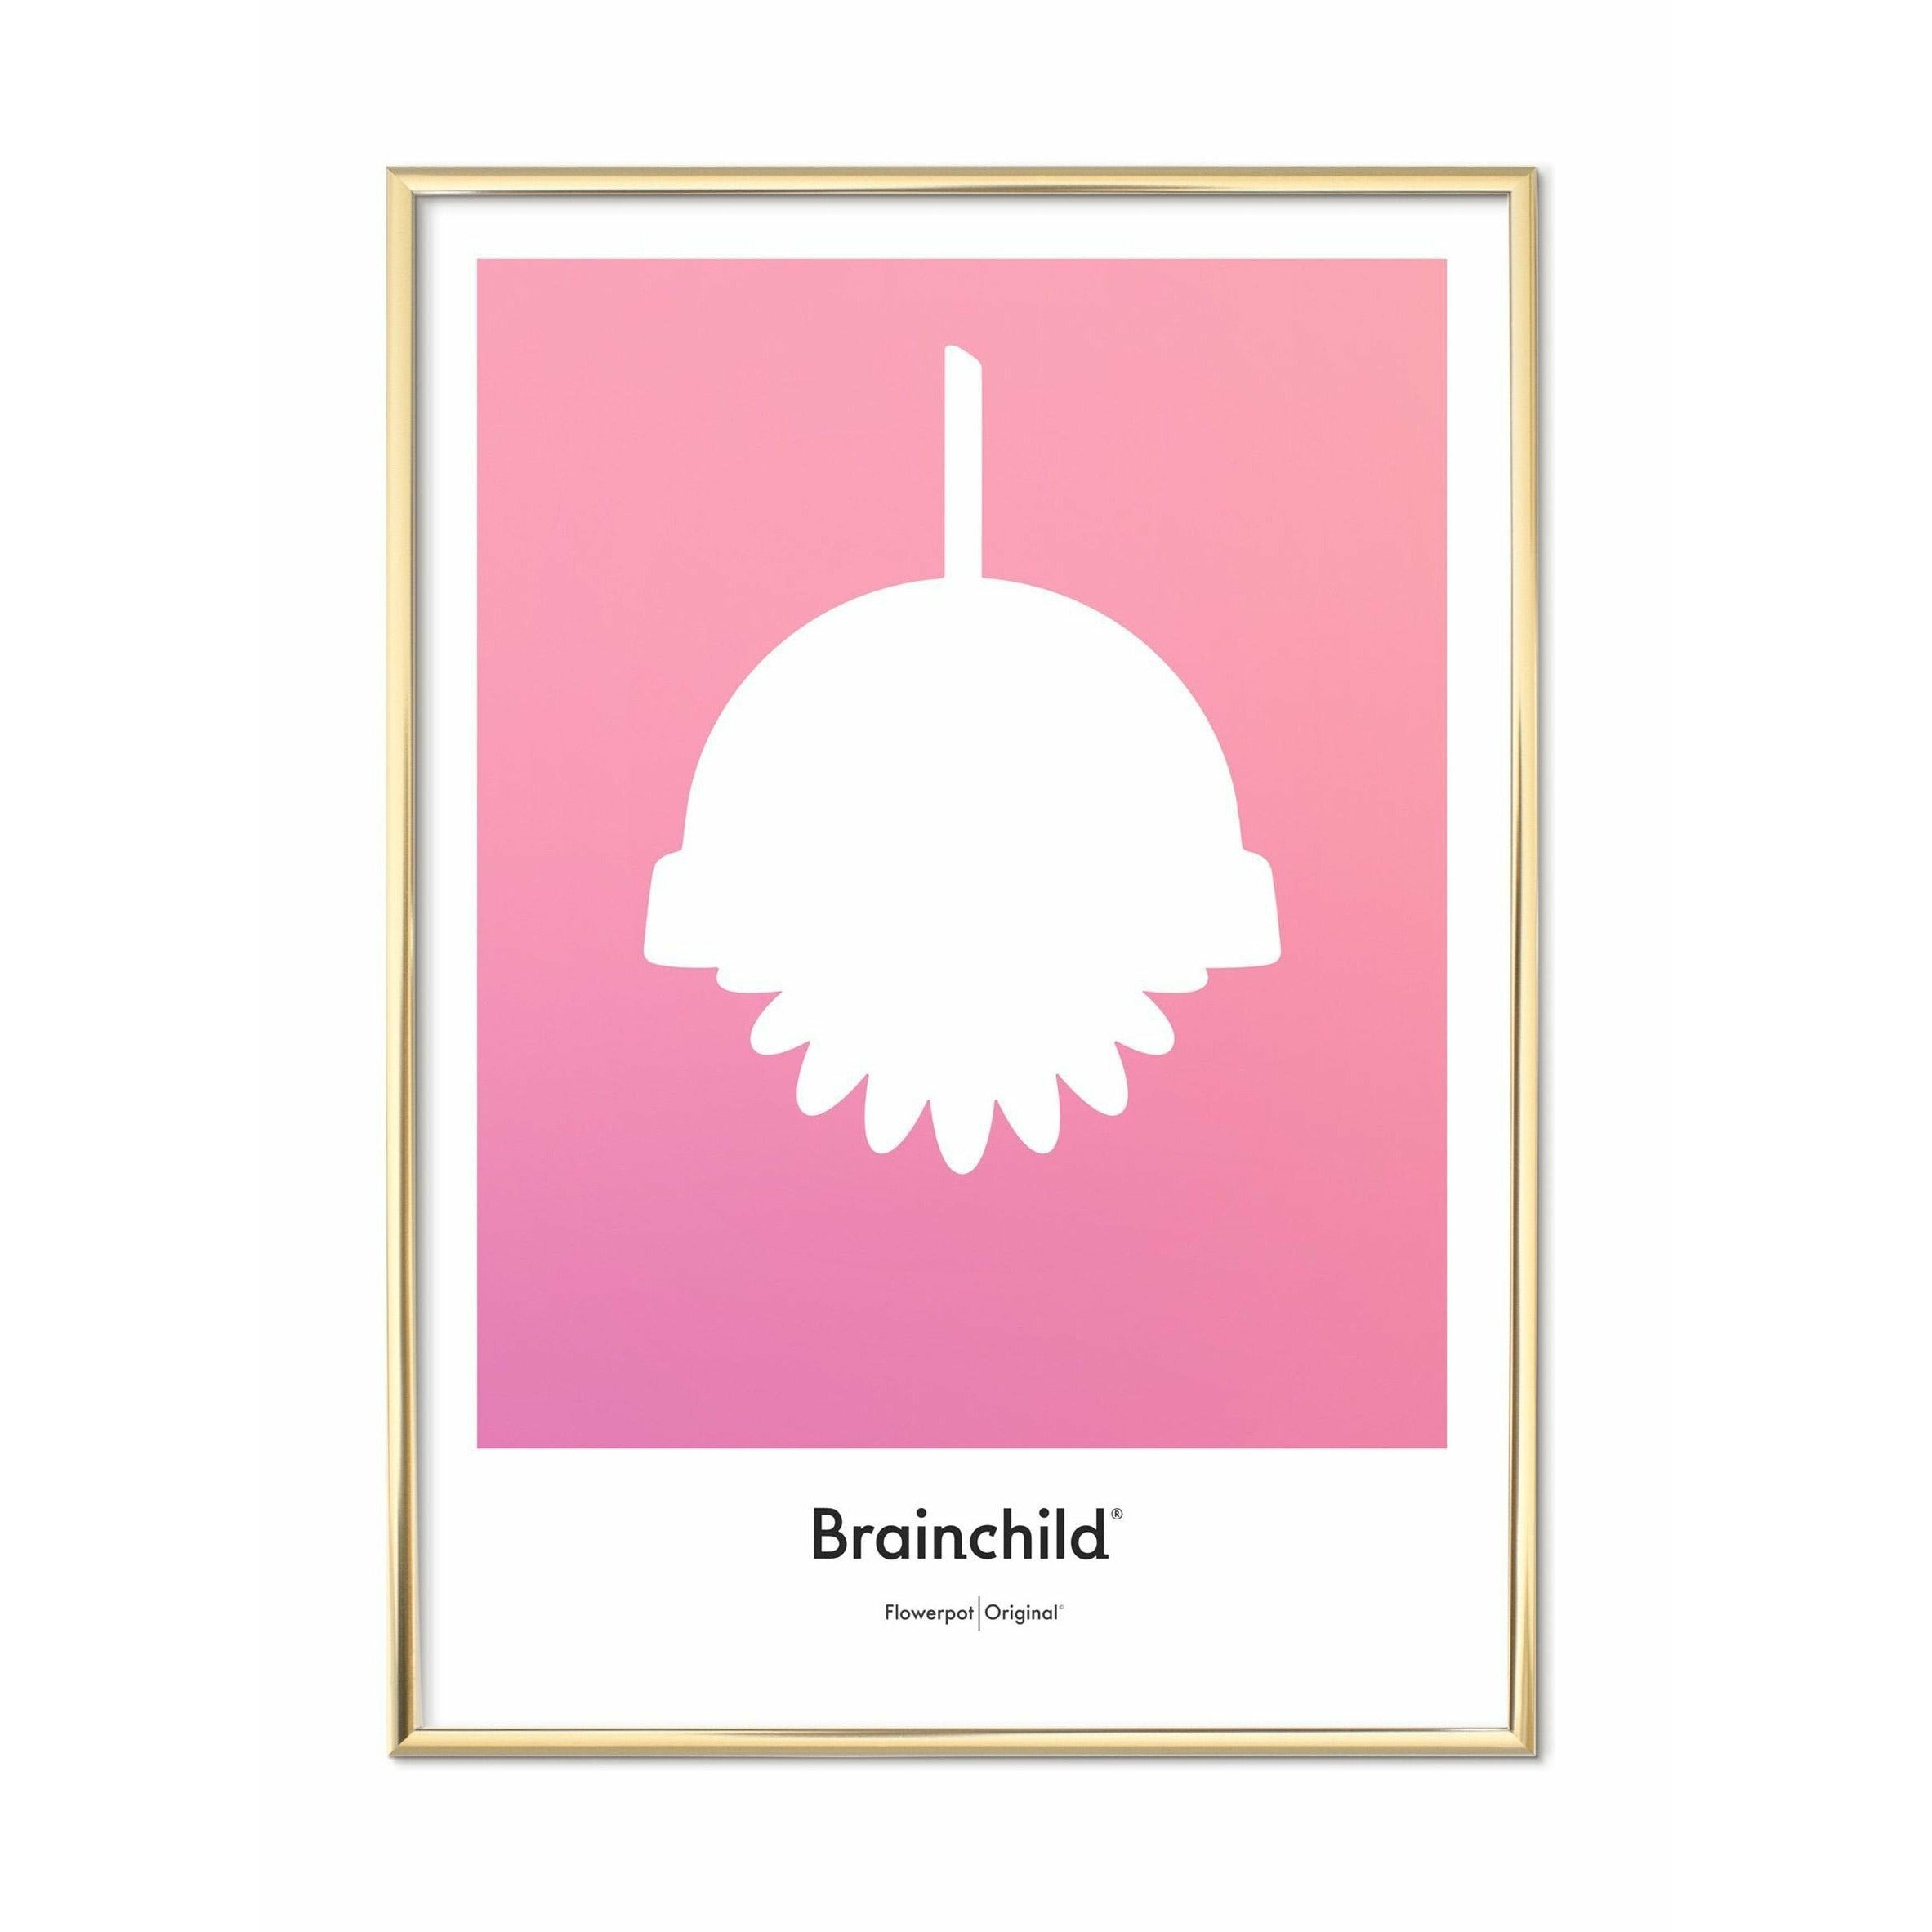 Plakát designu Brainchild Flowerpot Design, mosazný rám 50 x70 cm, růžový